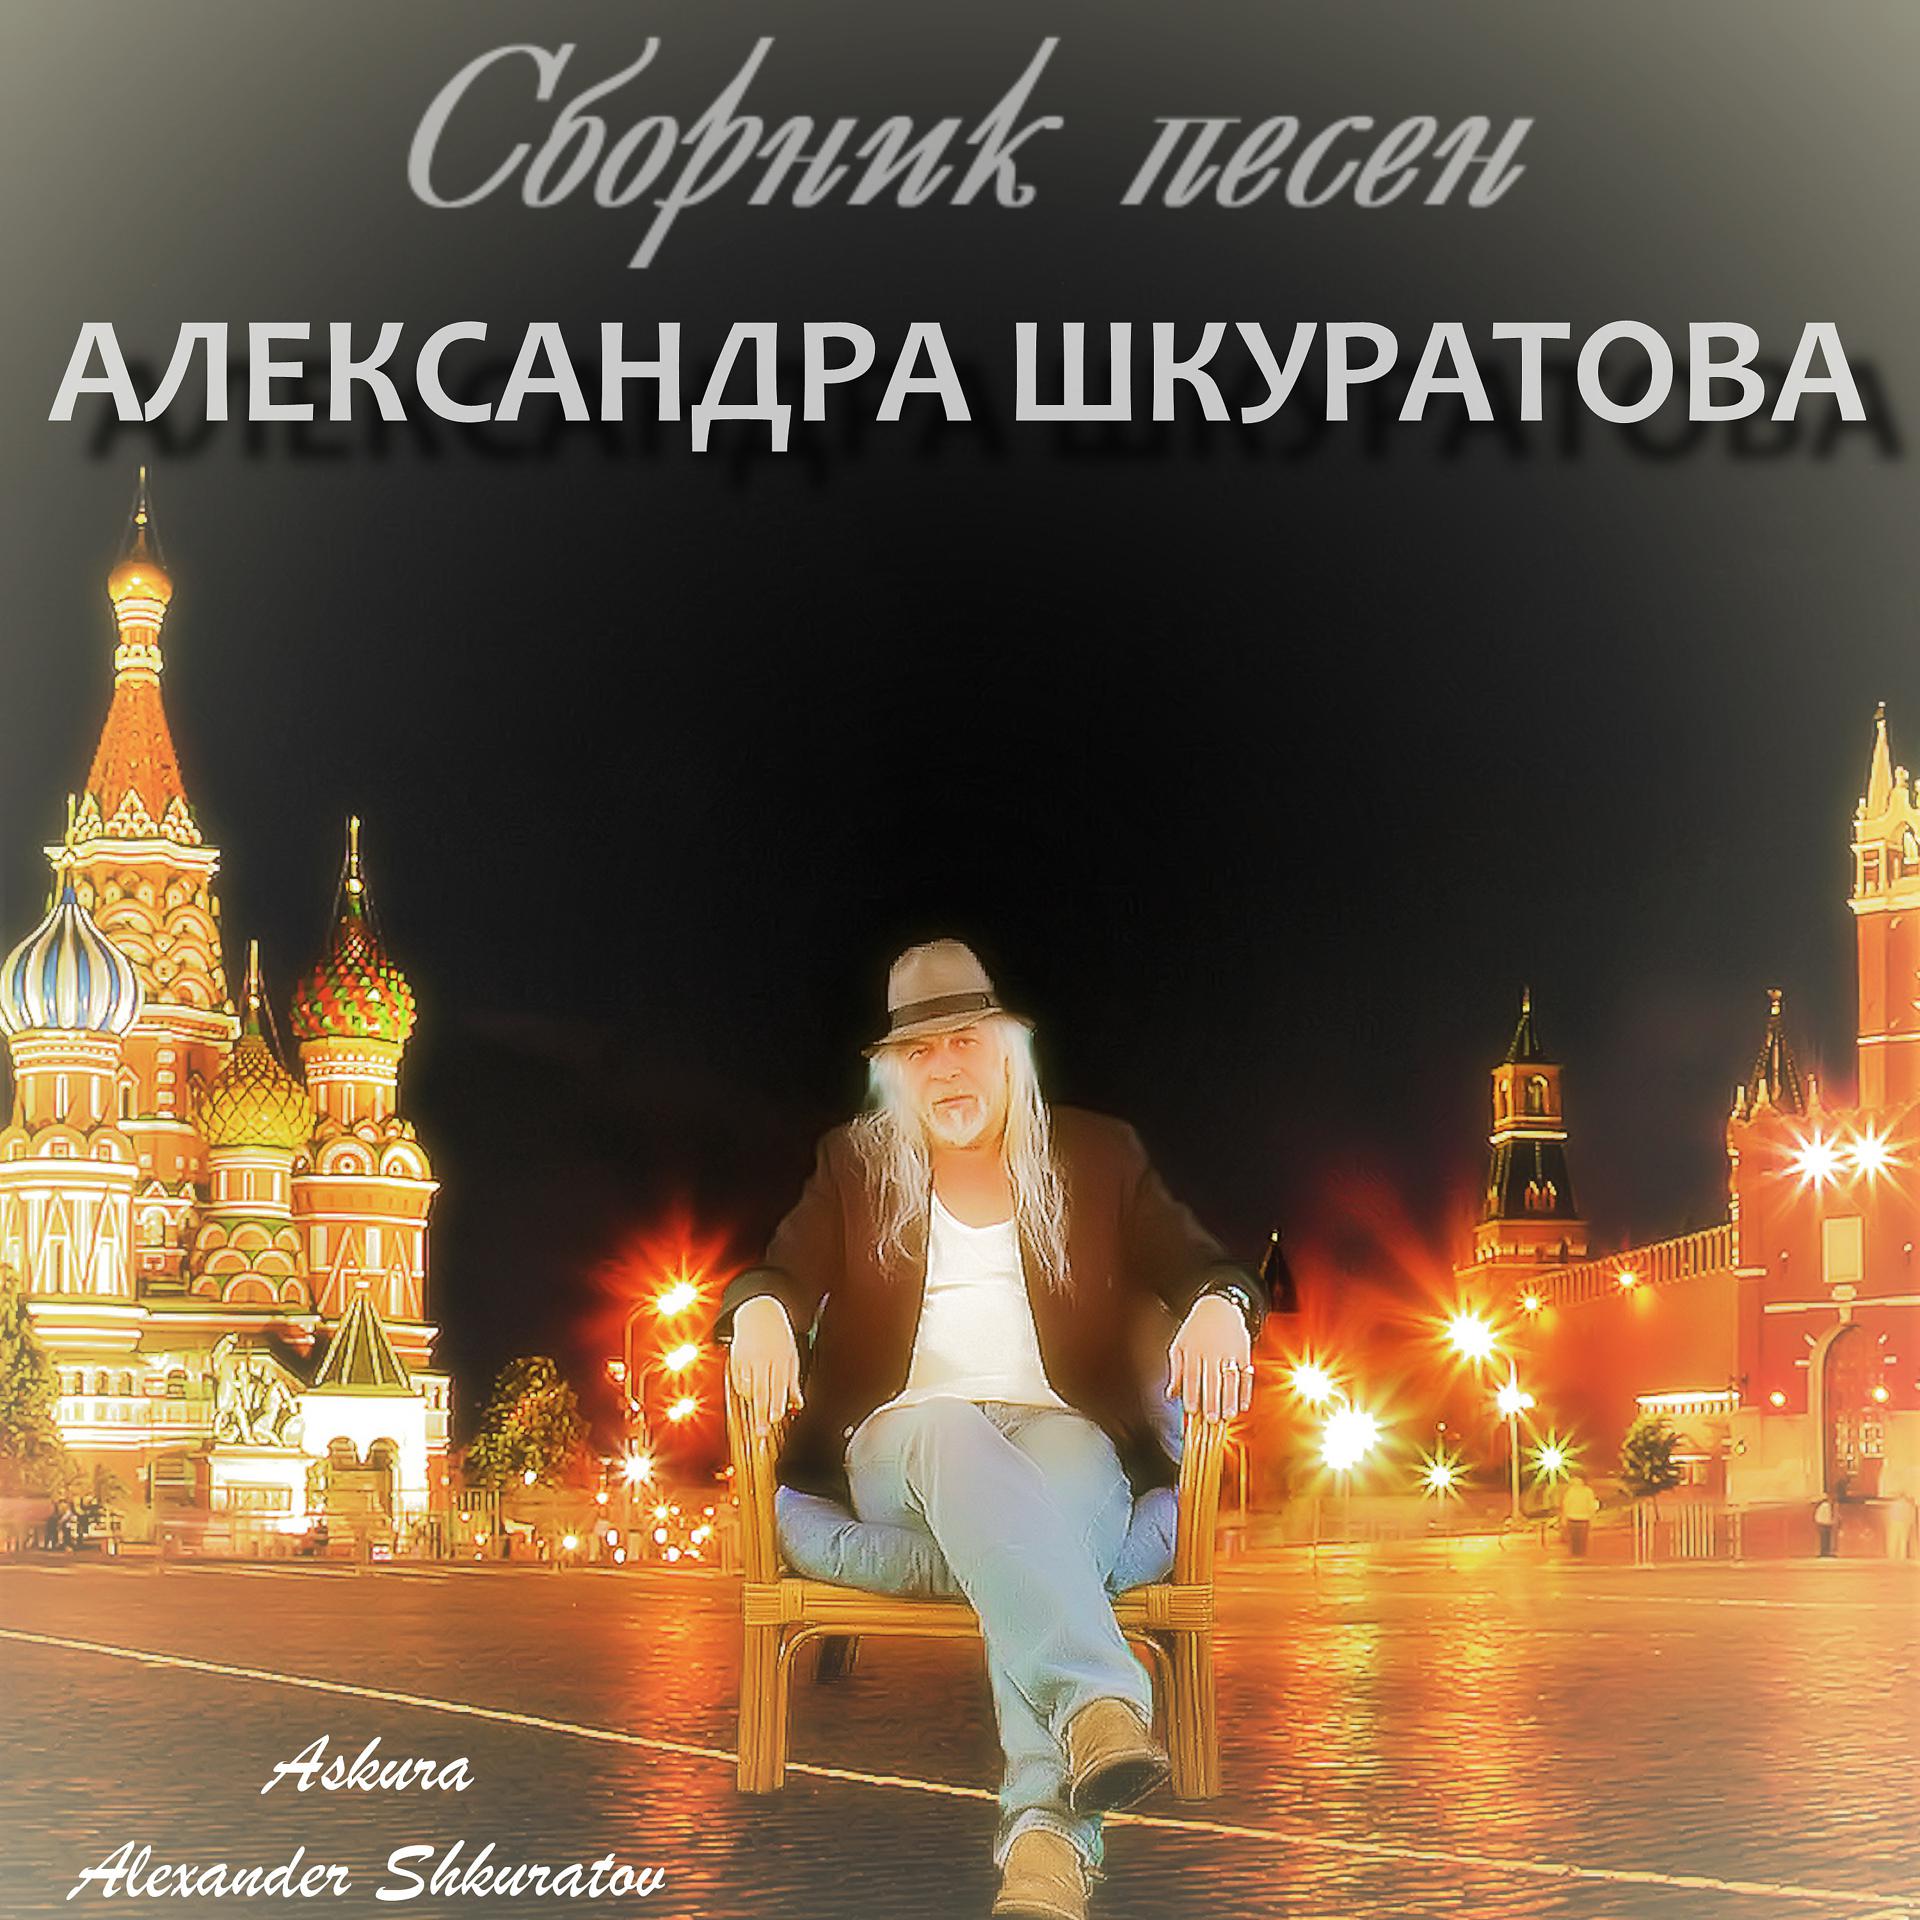 Постер к треку Askura Alexander Shkuratov, Ольга Канайкина - Золотой песок